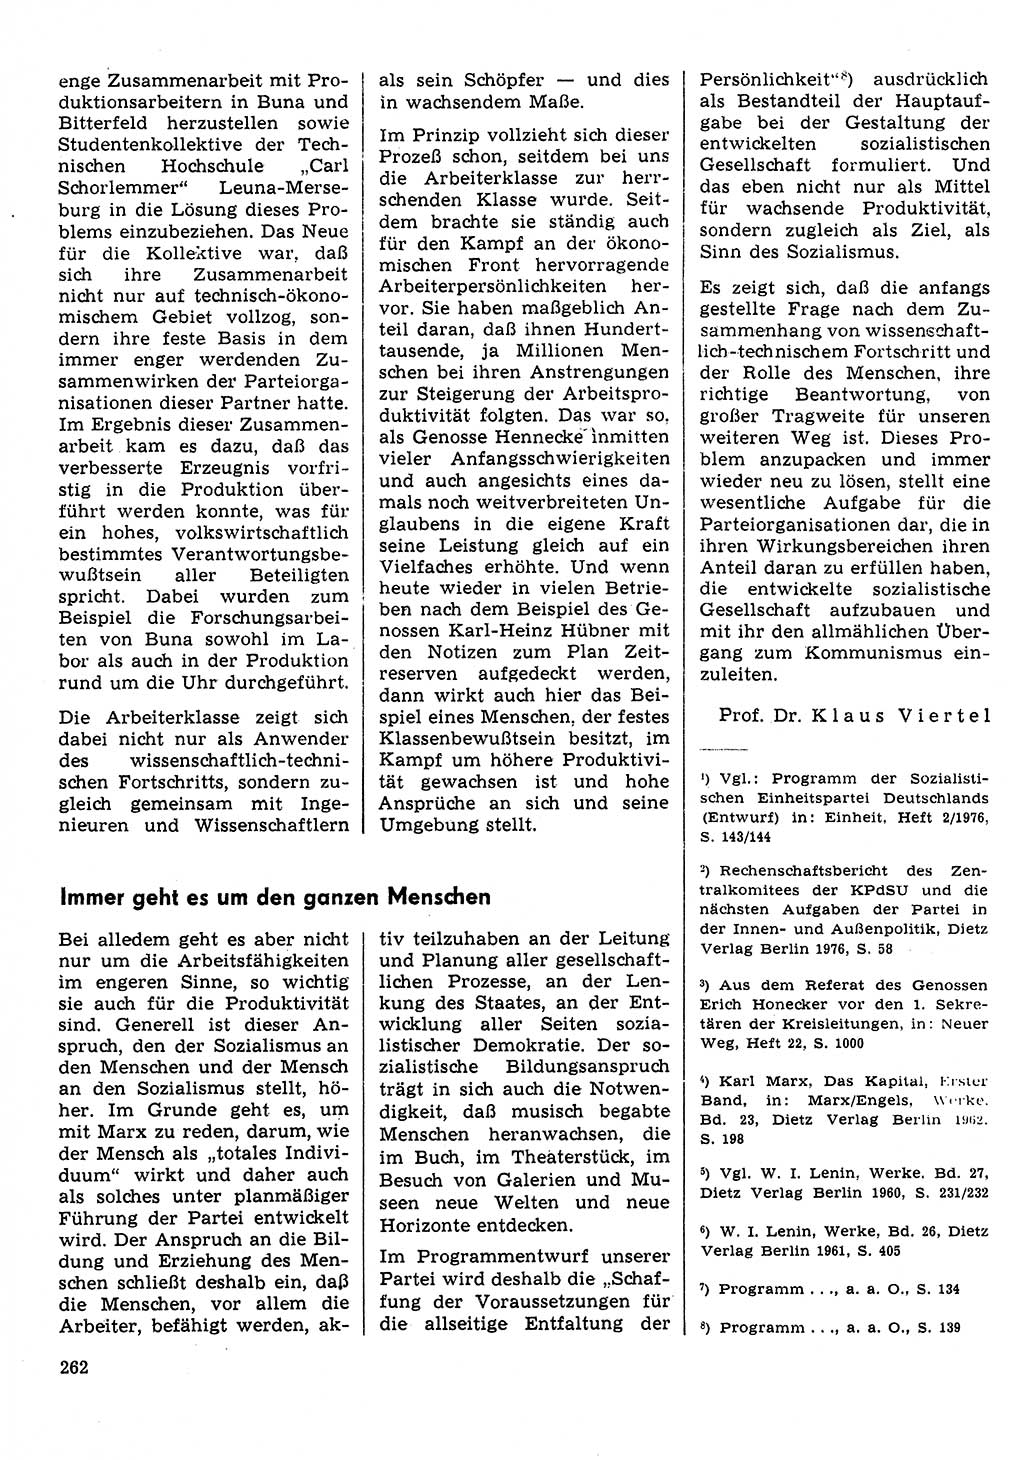 Neuer Weg (NW), Organ des Zentralkomitees (ZK) der SED (Sozialistische Einheitspartei Deutschlands) für Fragen des Parteilebens, 31. Jahrgang [Deutsche Demokratische Republik (DDR)] 1976, Seite 262 (NW ZK SED DDR 1976, S. 262)